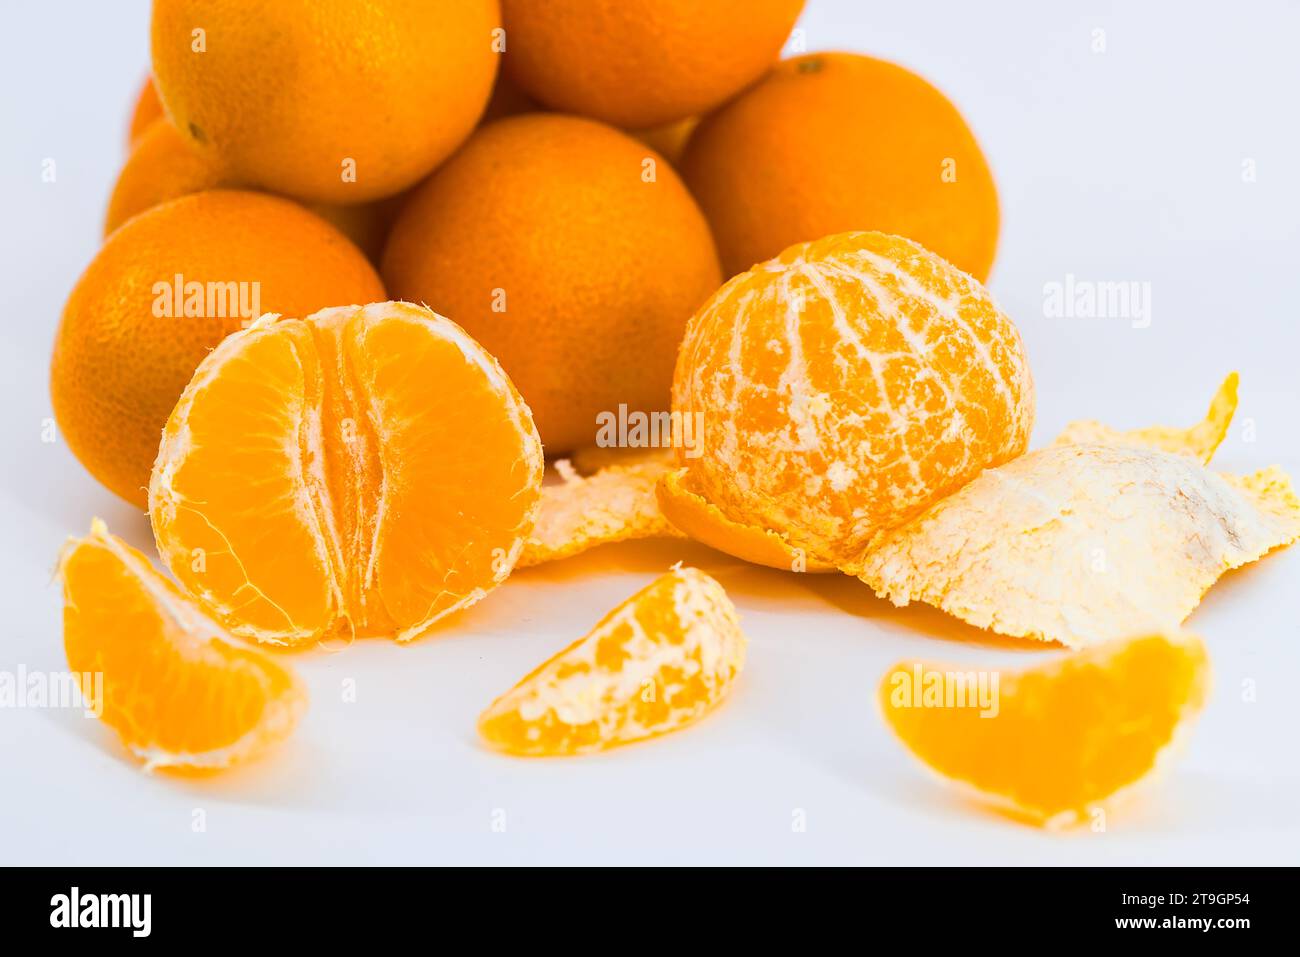 Eine entzückende Komposition, die die Frische von Mandarinen vor einem sauberen weißen Hintergrund einfängt. Stockfoto